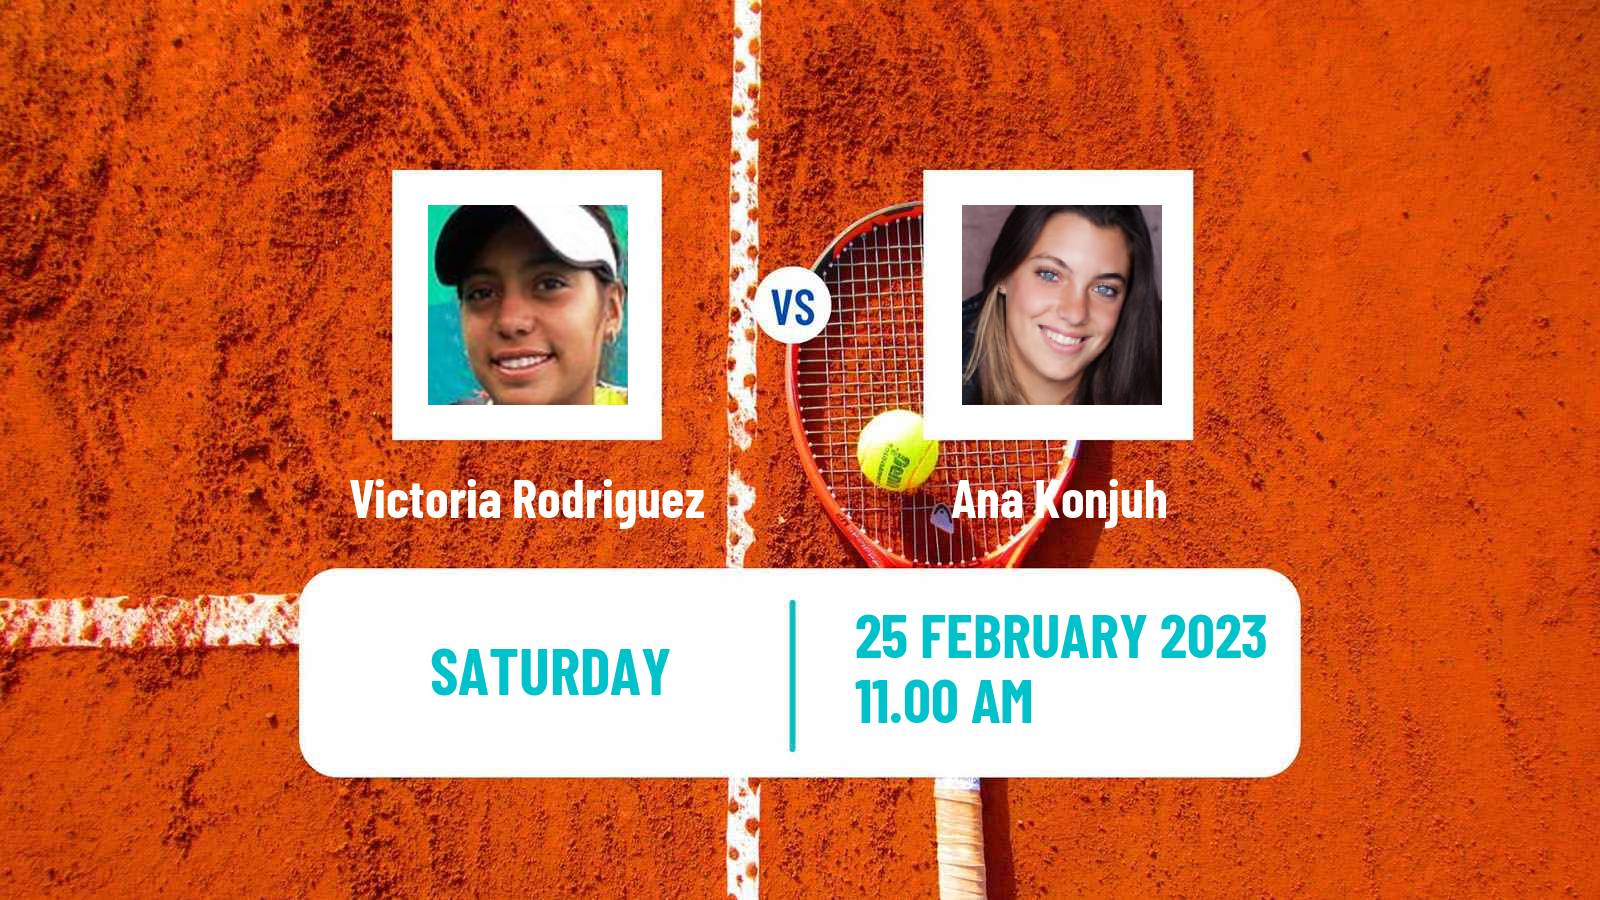 Tennis WTA Monterrey Victoria Rodriguez - Ana Konjuh